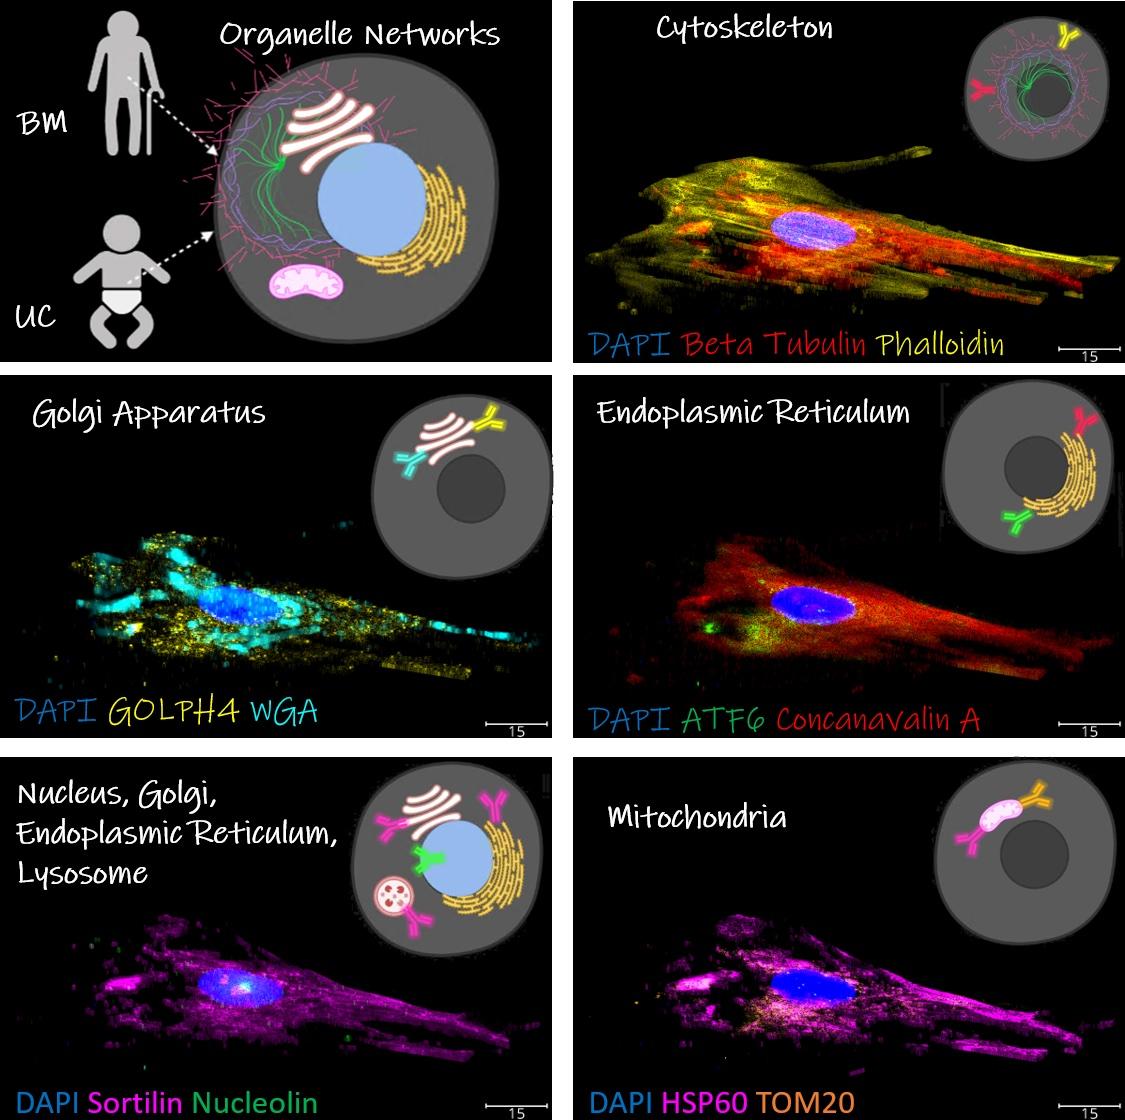 renderings of organelles